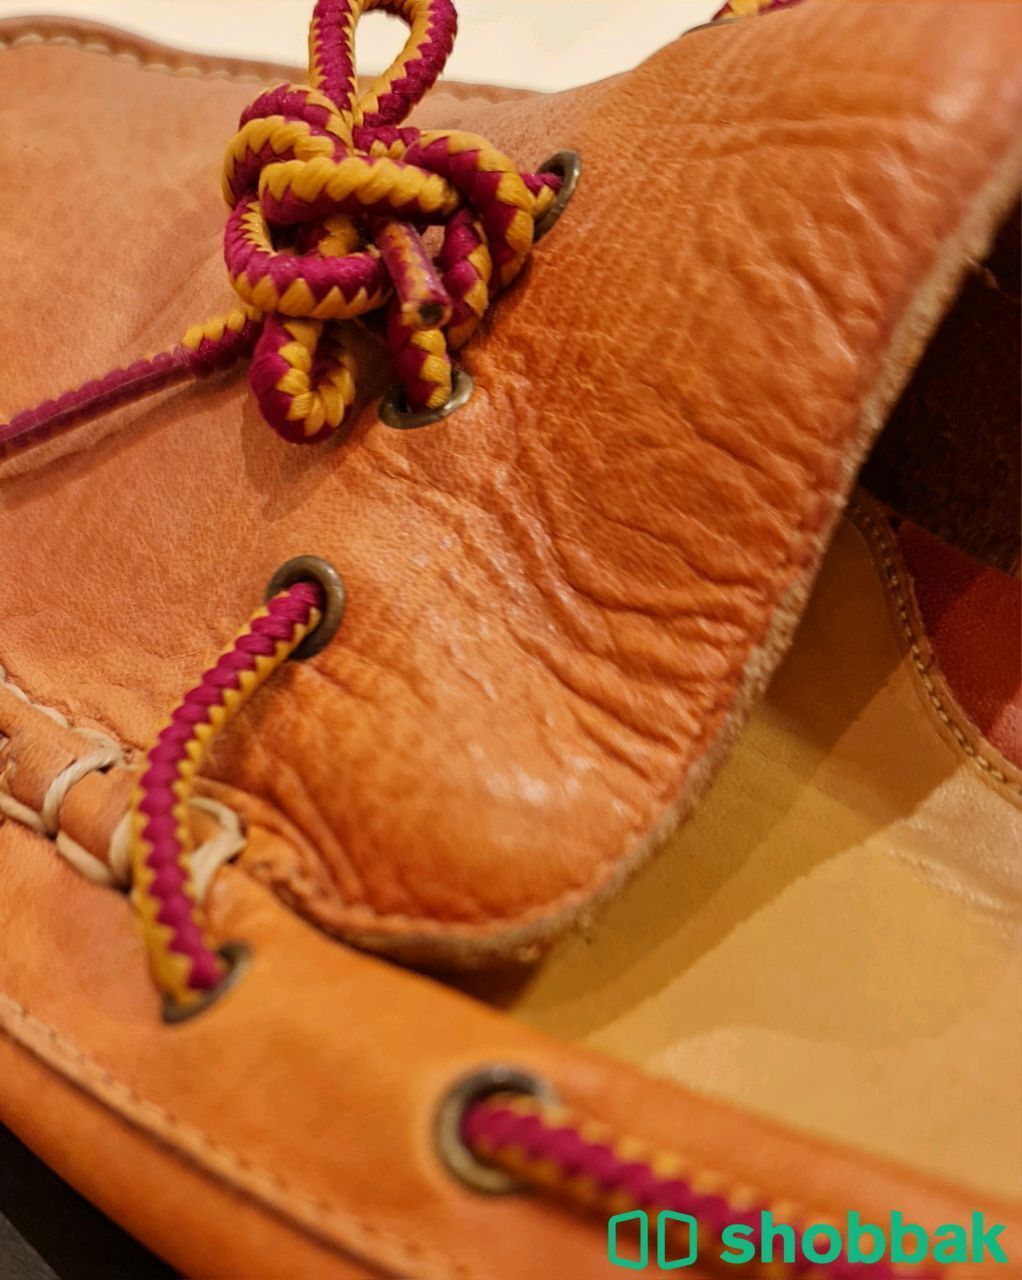 حذاء كول هان رجالي مقاس 44 ، اللون بني فاتح Shobbak Saudi Arabia